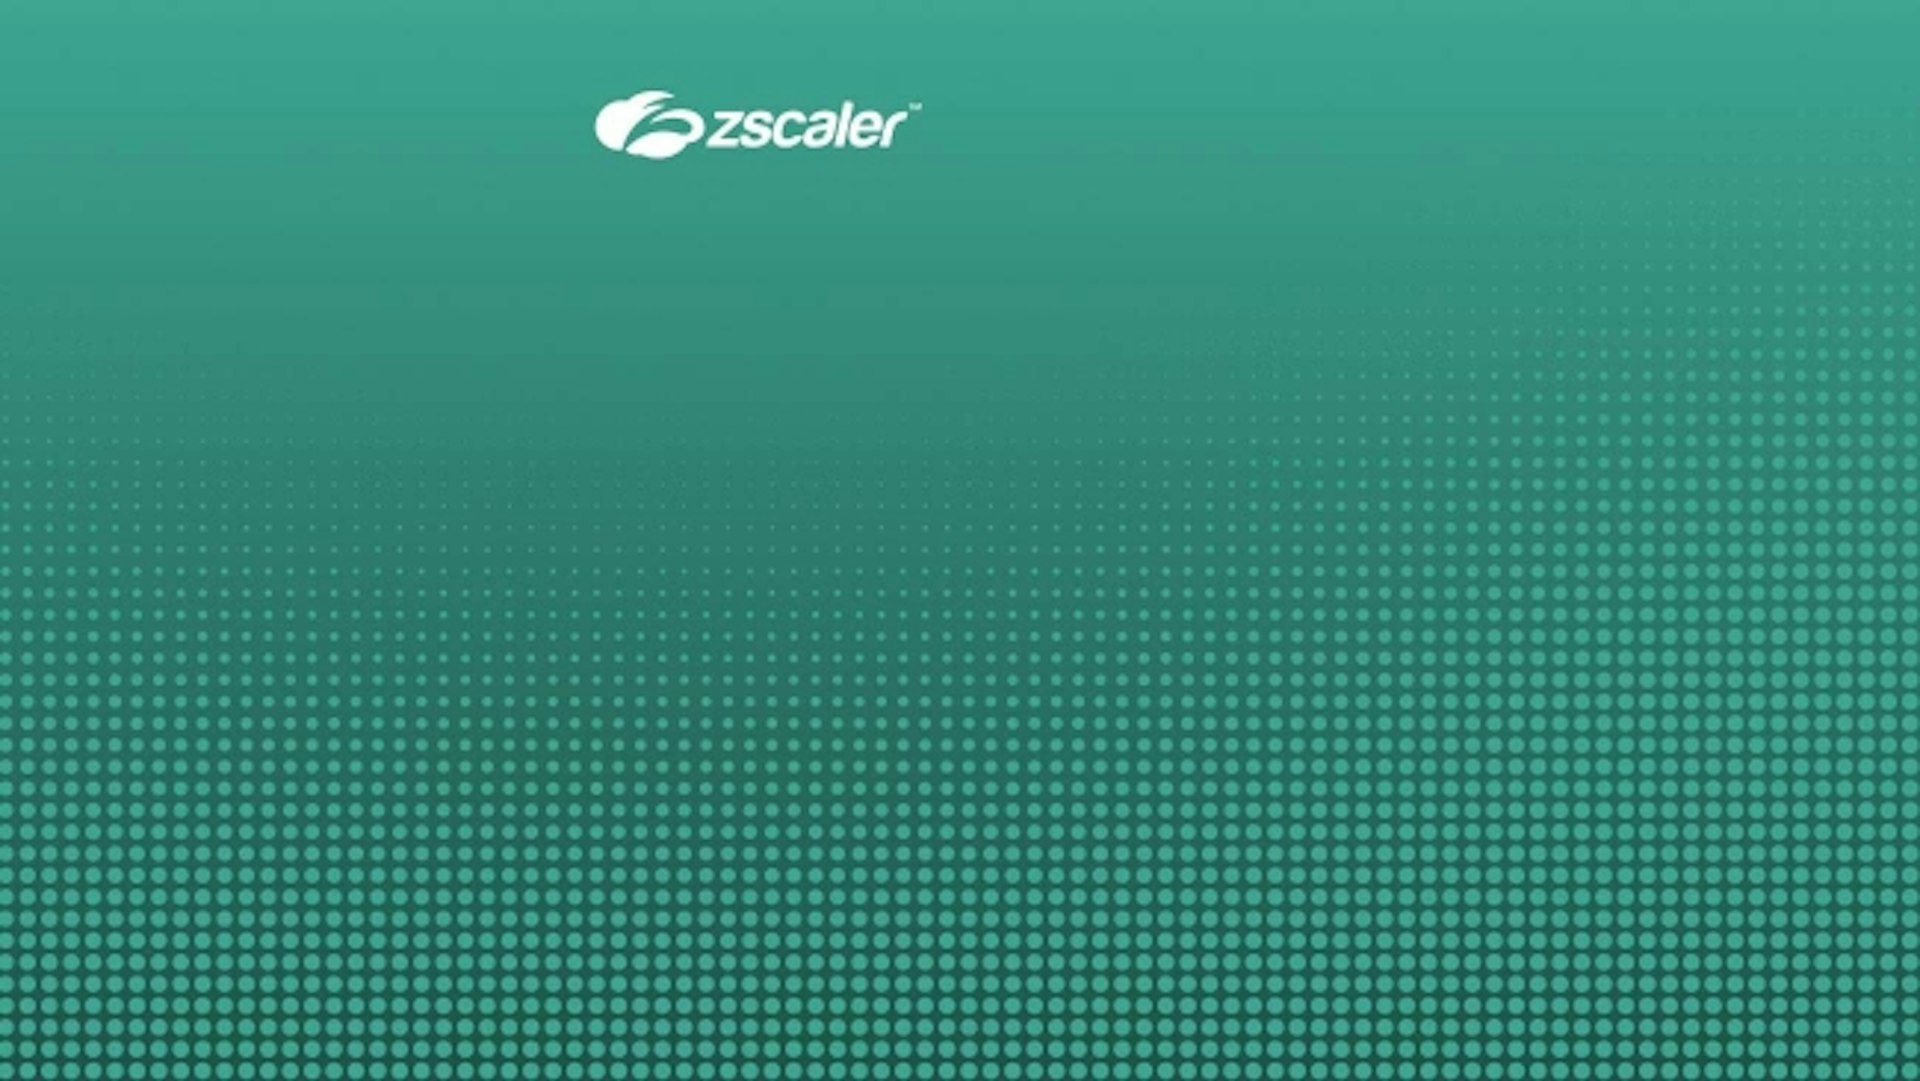 Accesso remoto con privilegi di Zscaler per la sicurezza di OT e IIoT